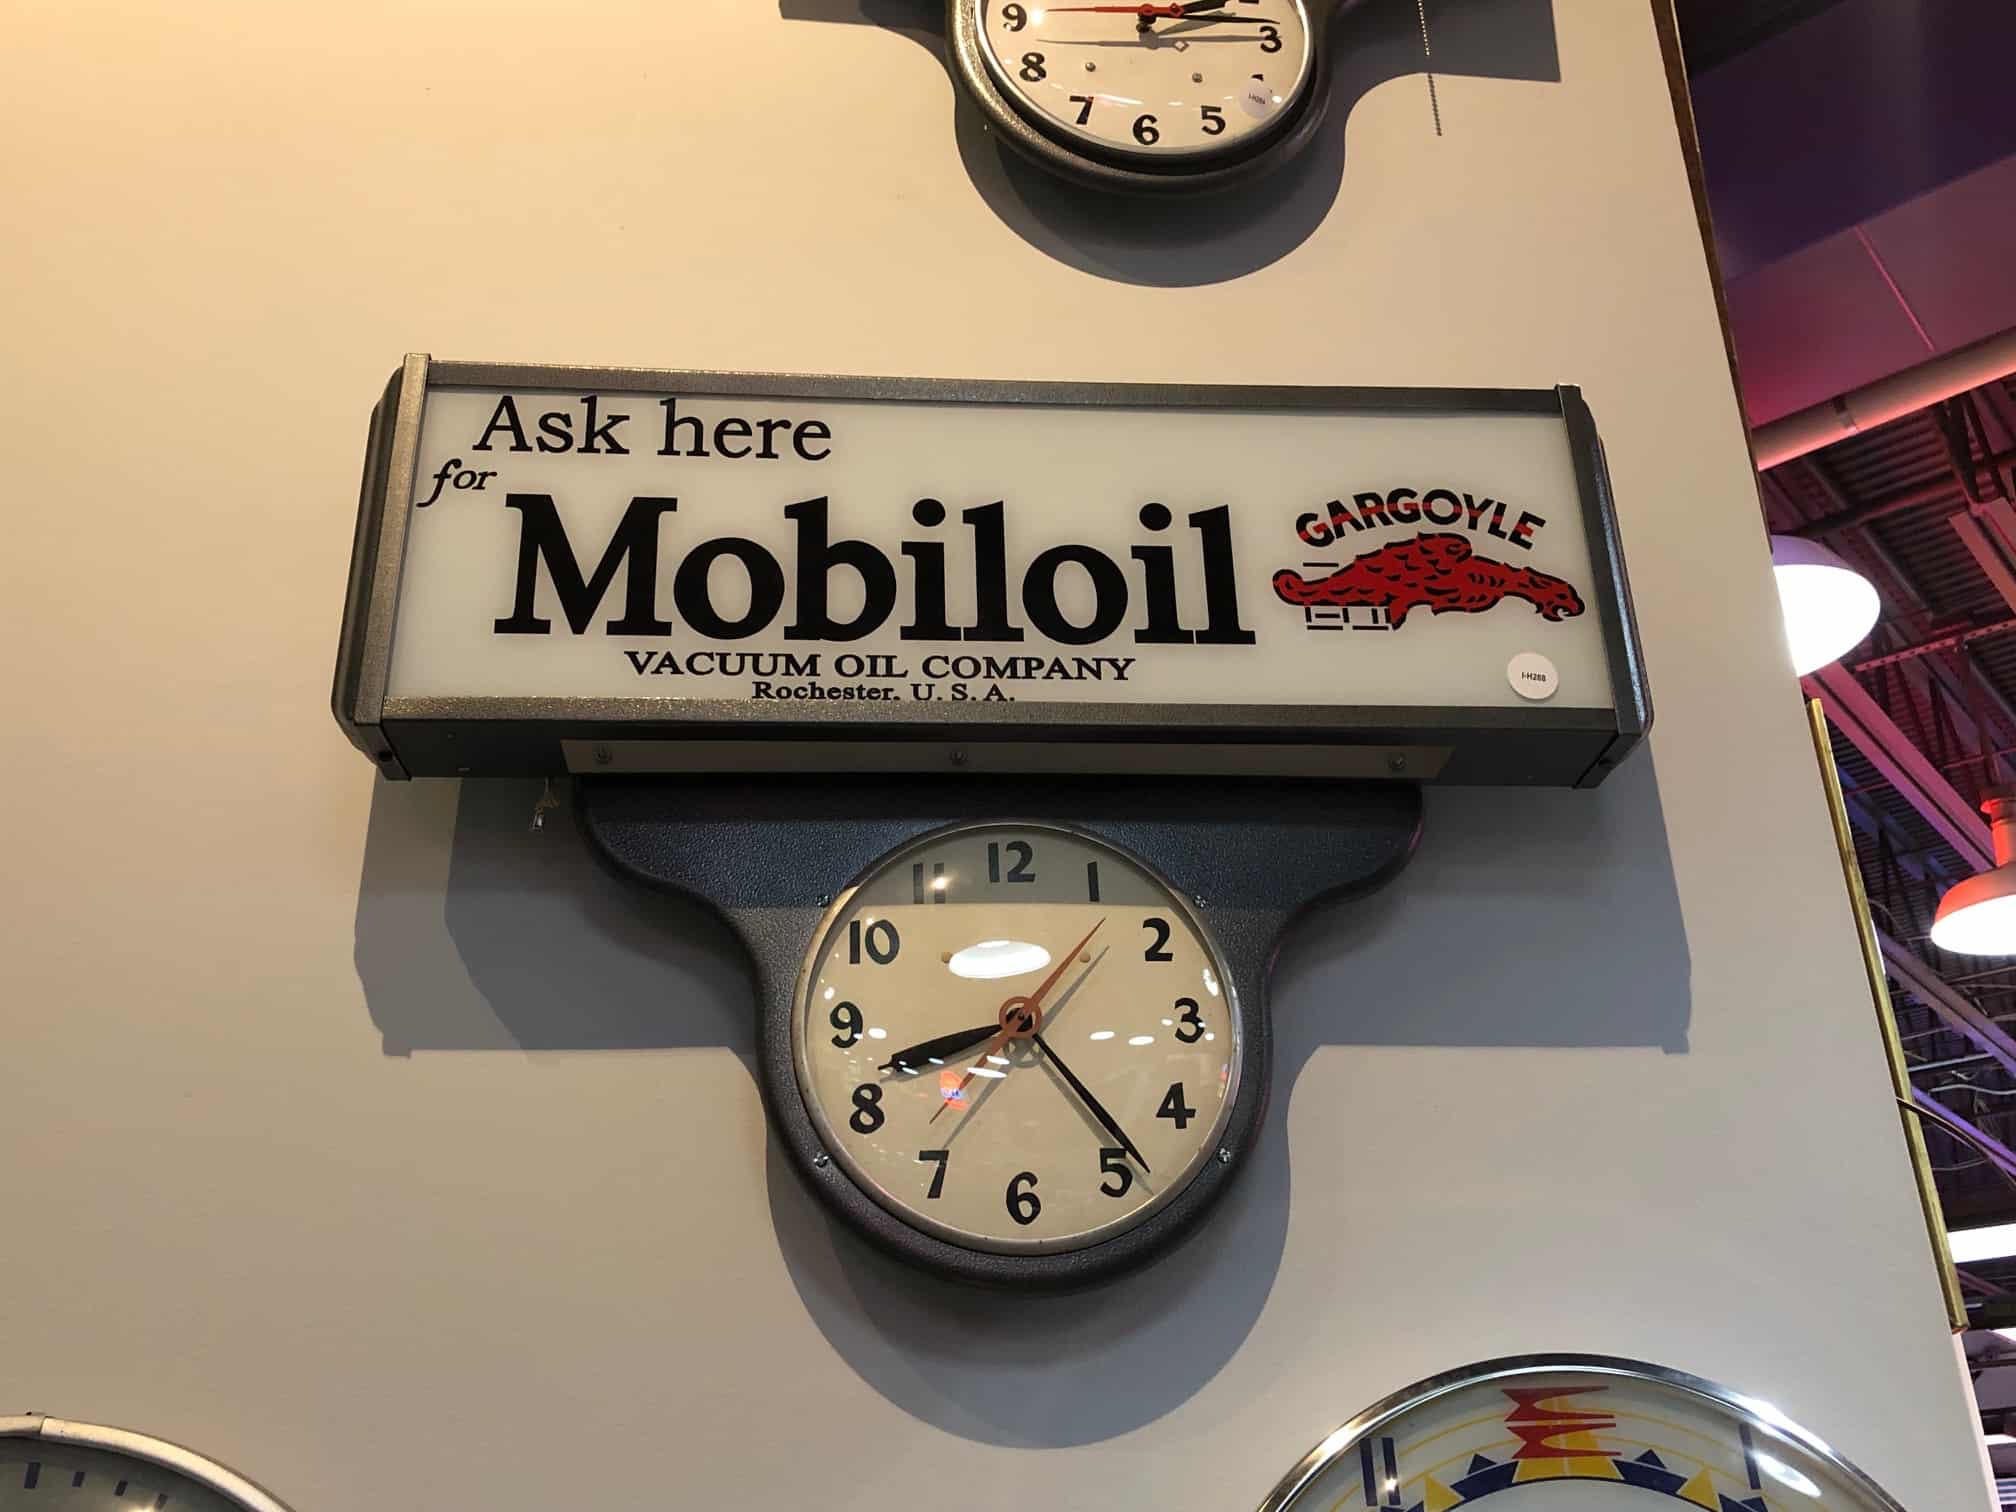 Mobil Oil Gargoyle Light Up Clock